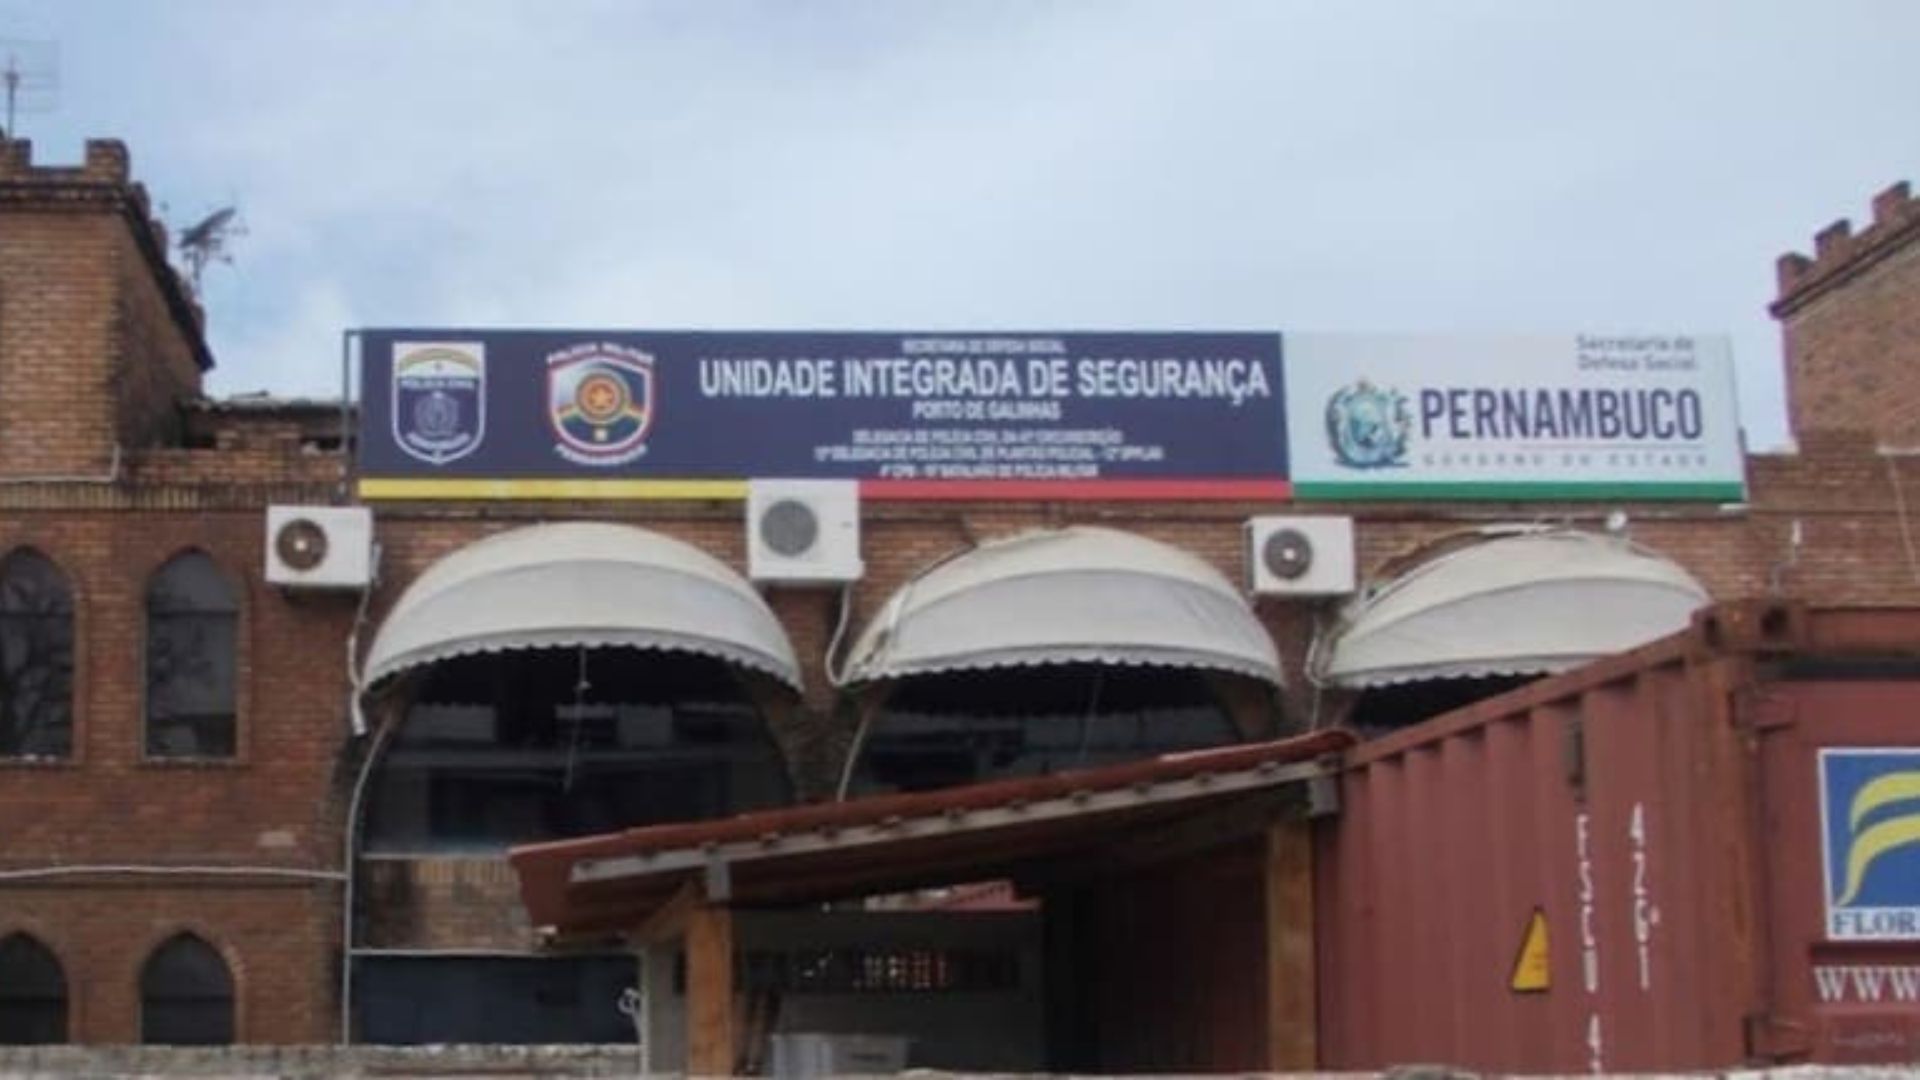 Unidade Integrativa de Segurança em Porto de Galinhas. Foto: Reprodução